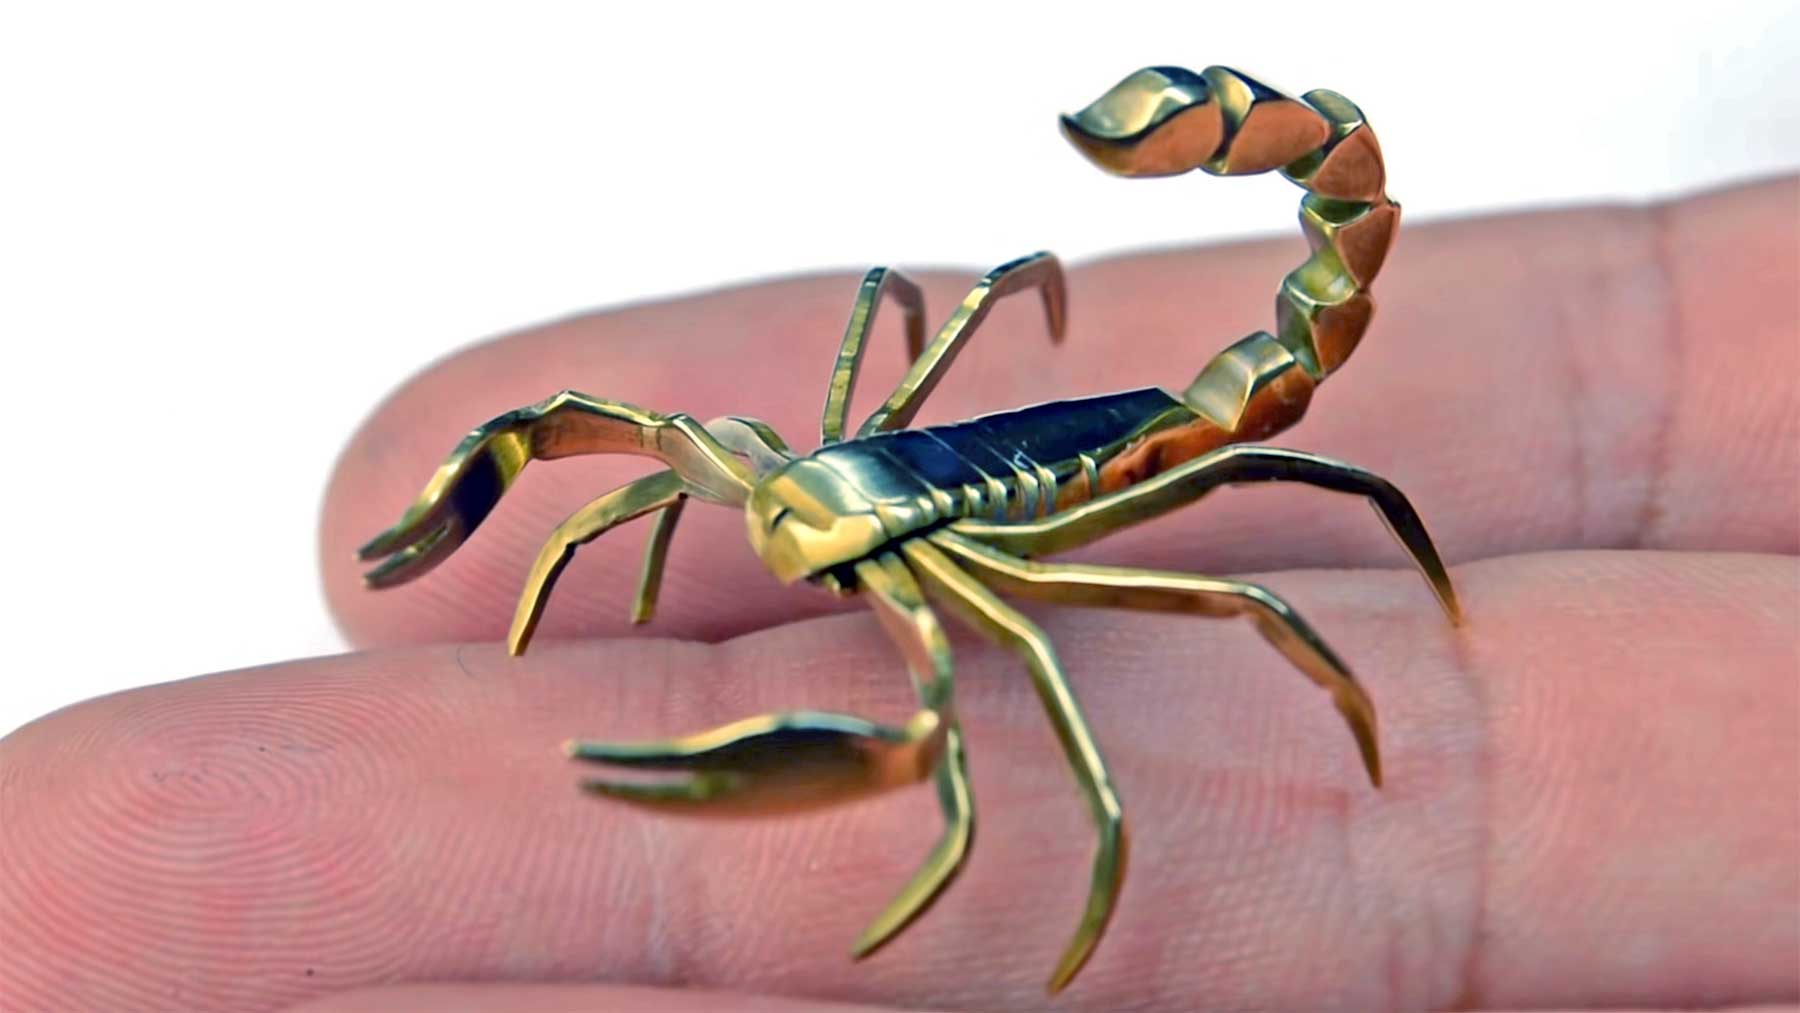 Skorpion aus einer einzelnen Schraube gefertigt